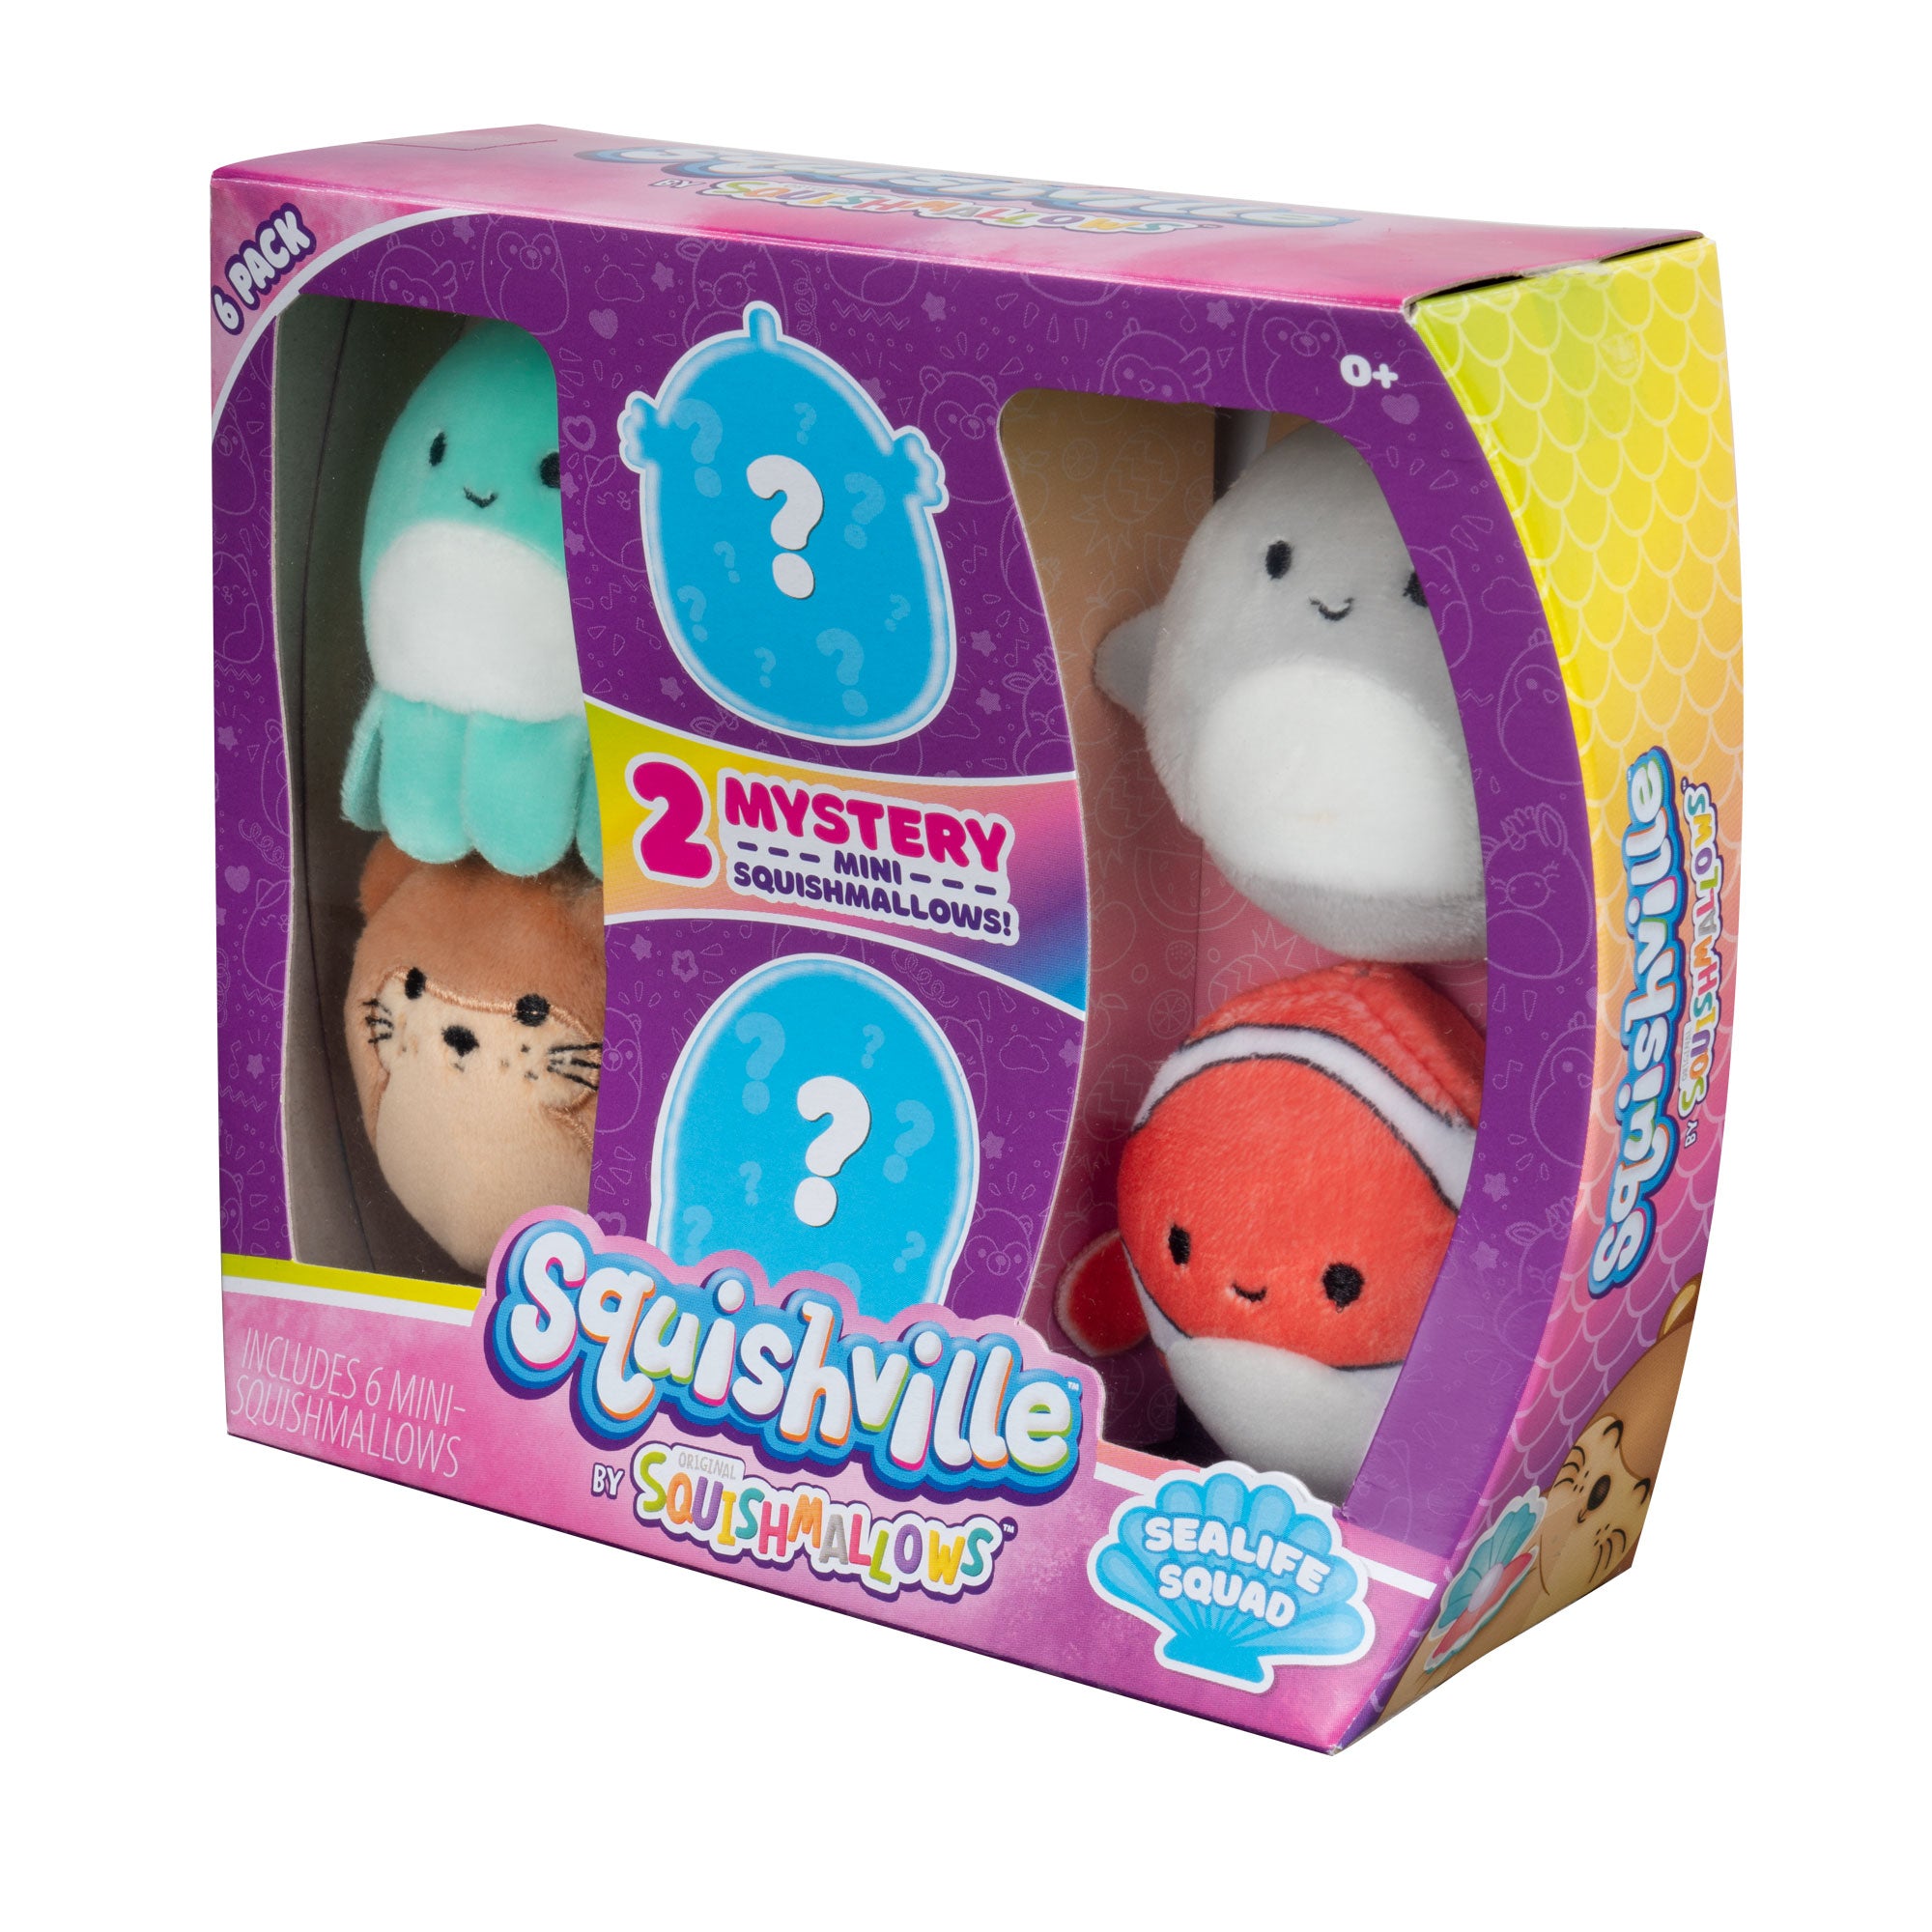 Squishville Mini Squishmallows 6-Pack Sealife Squad